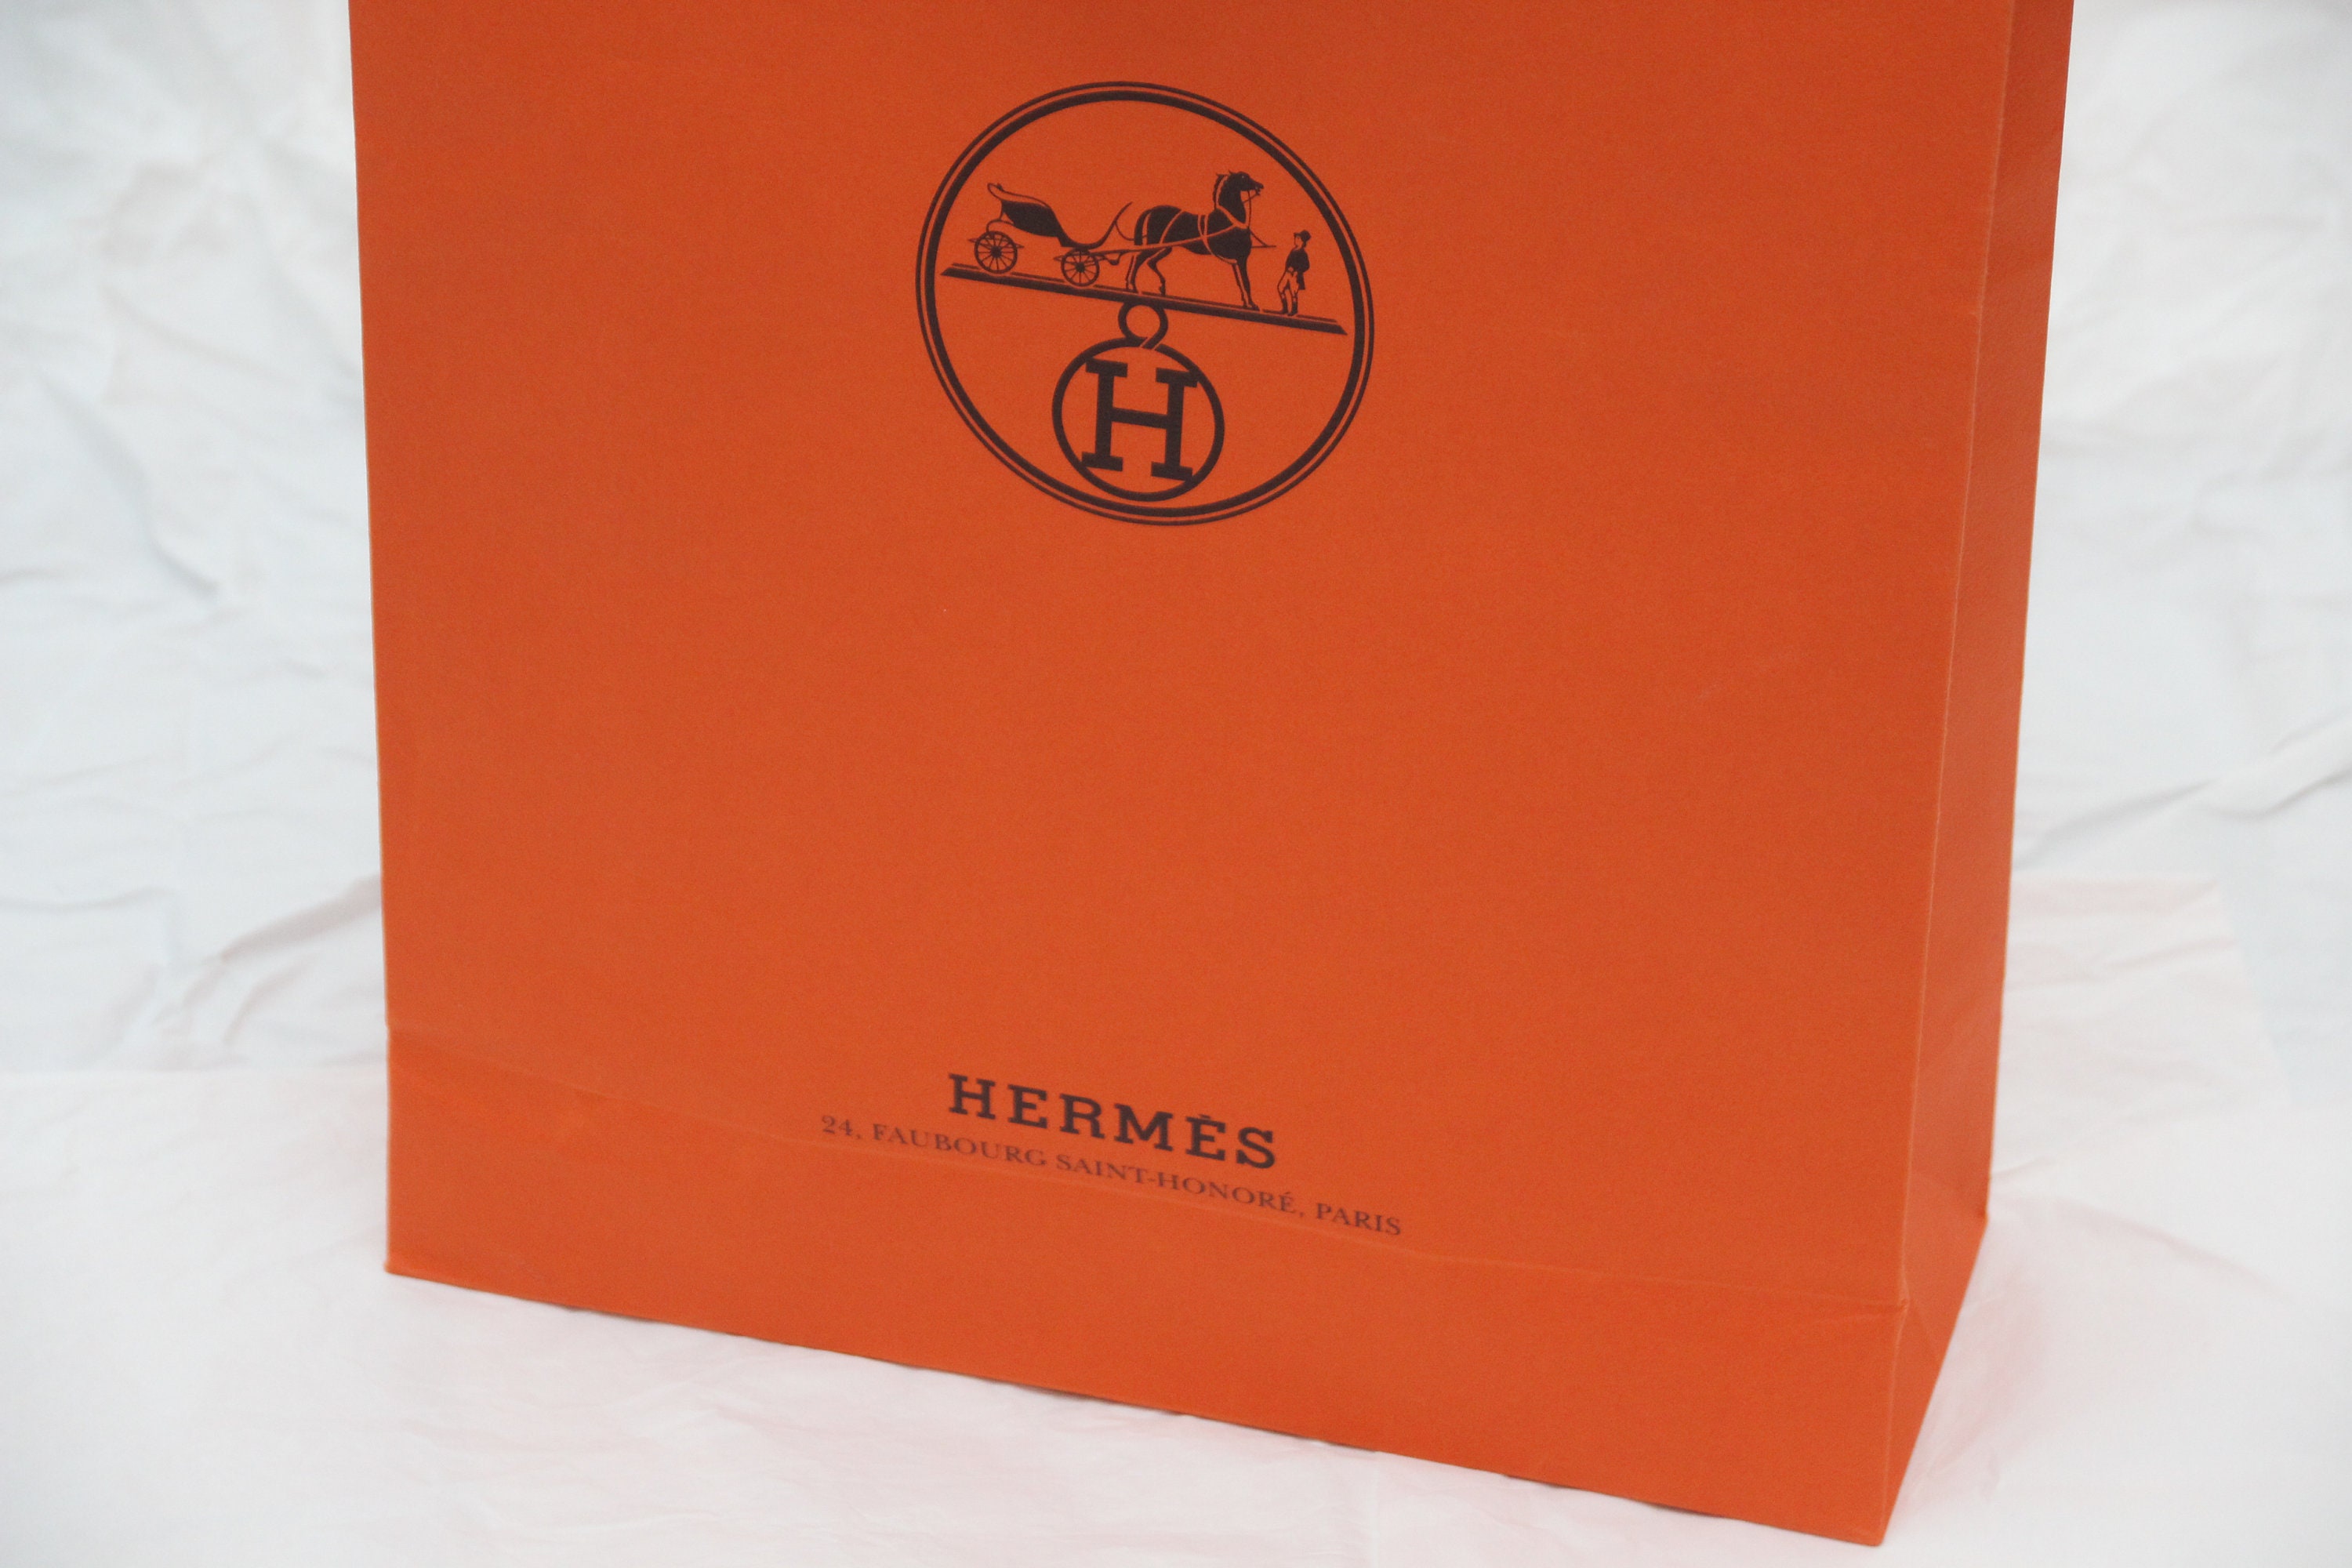 Orange Hermes Shopping Bag Gift Wrapping Elegant Gift for Her